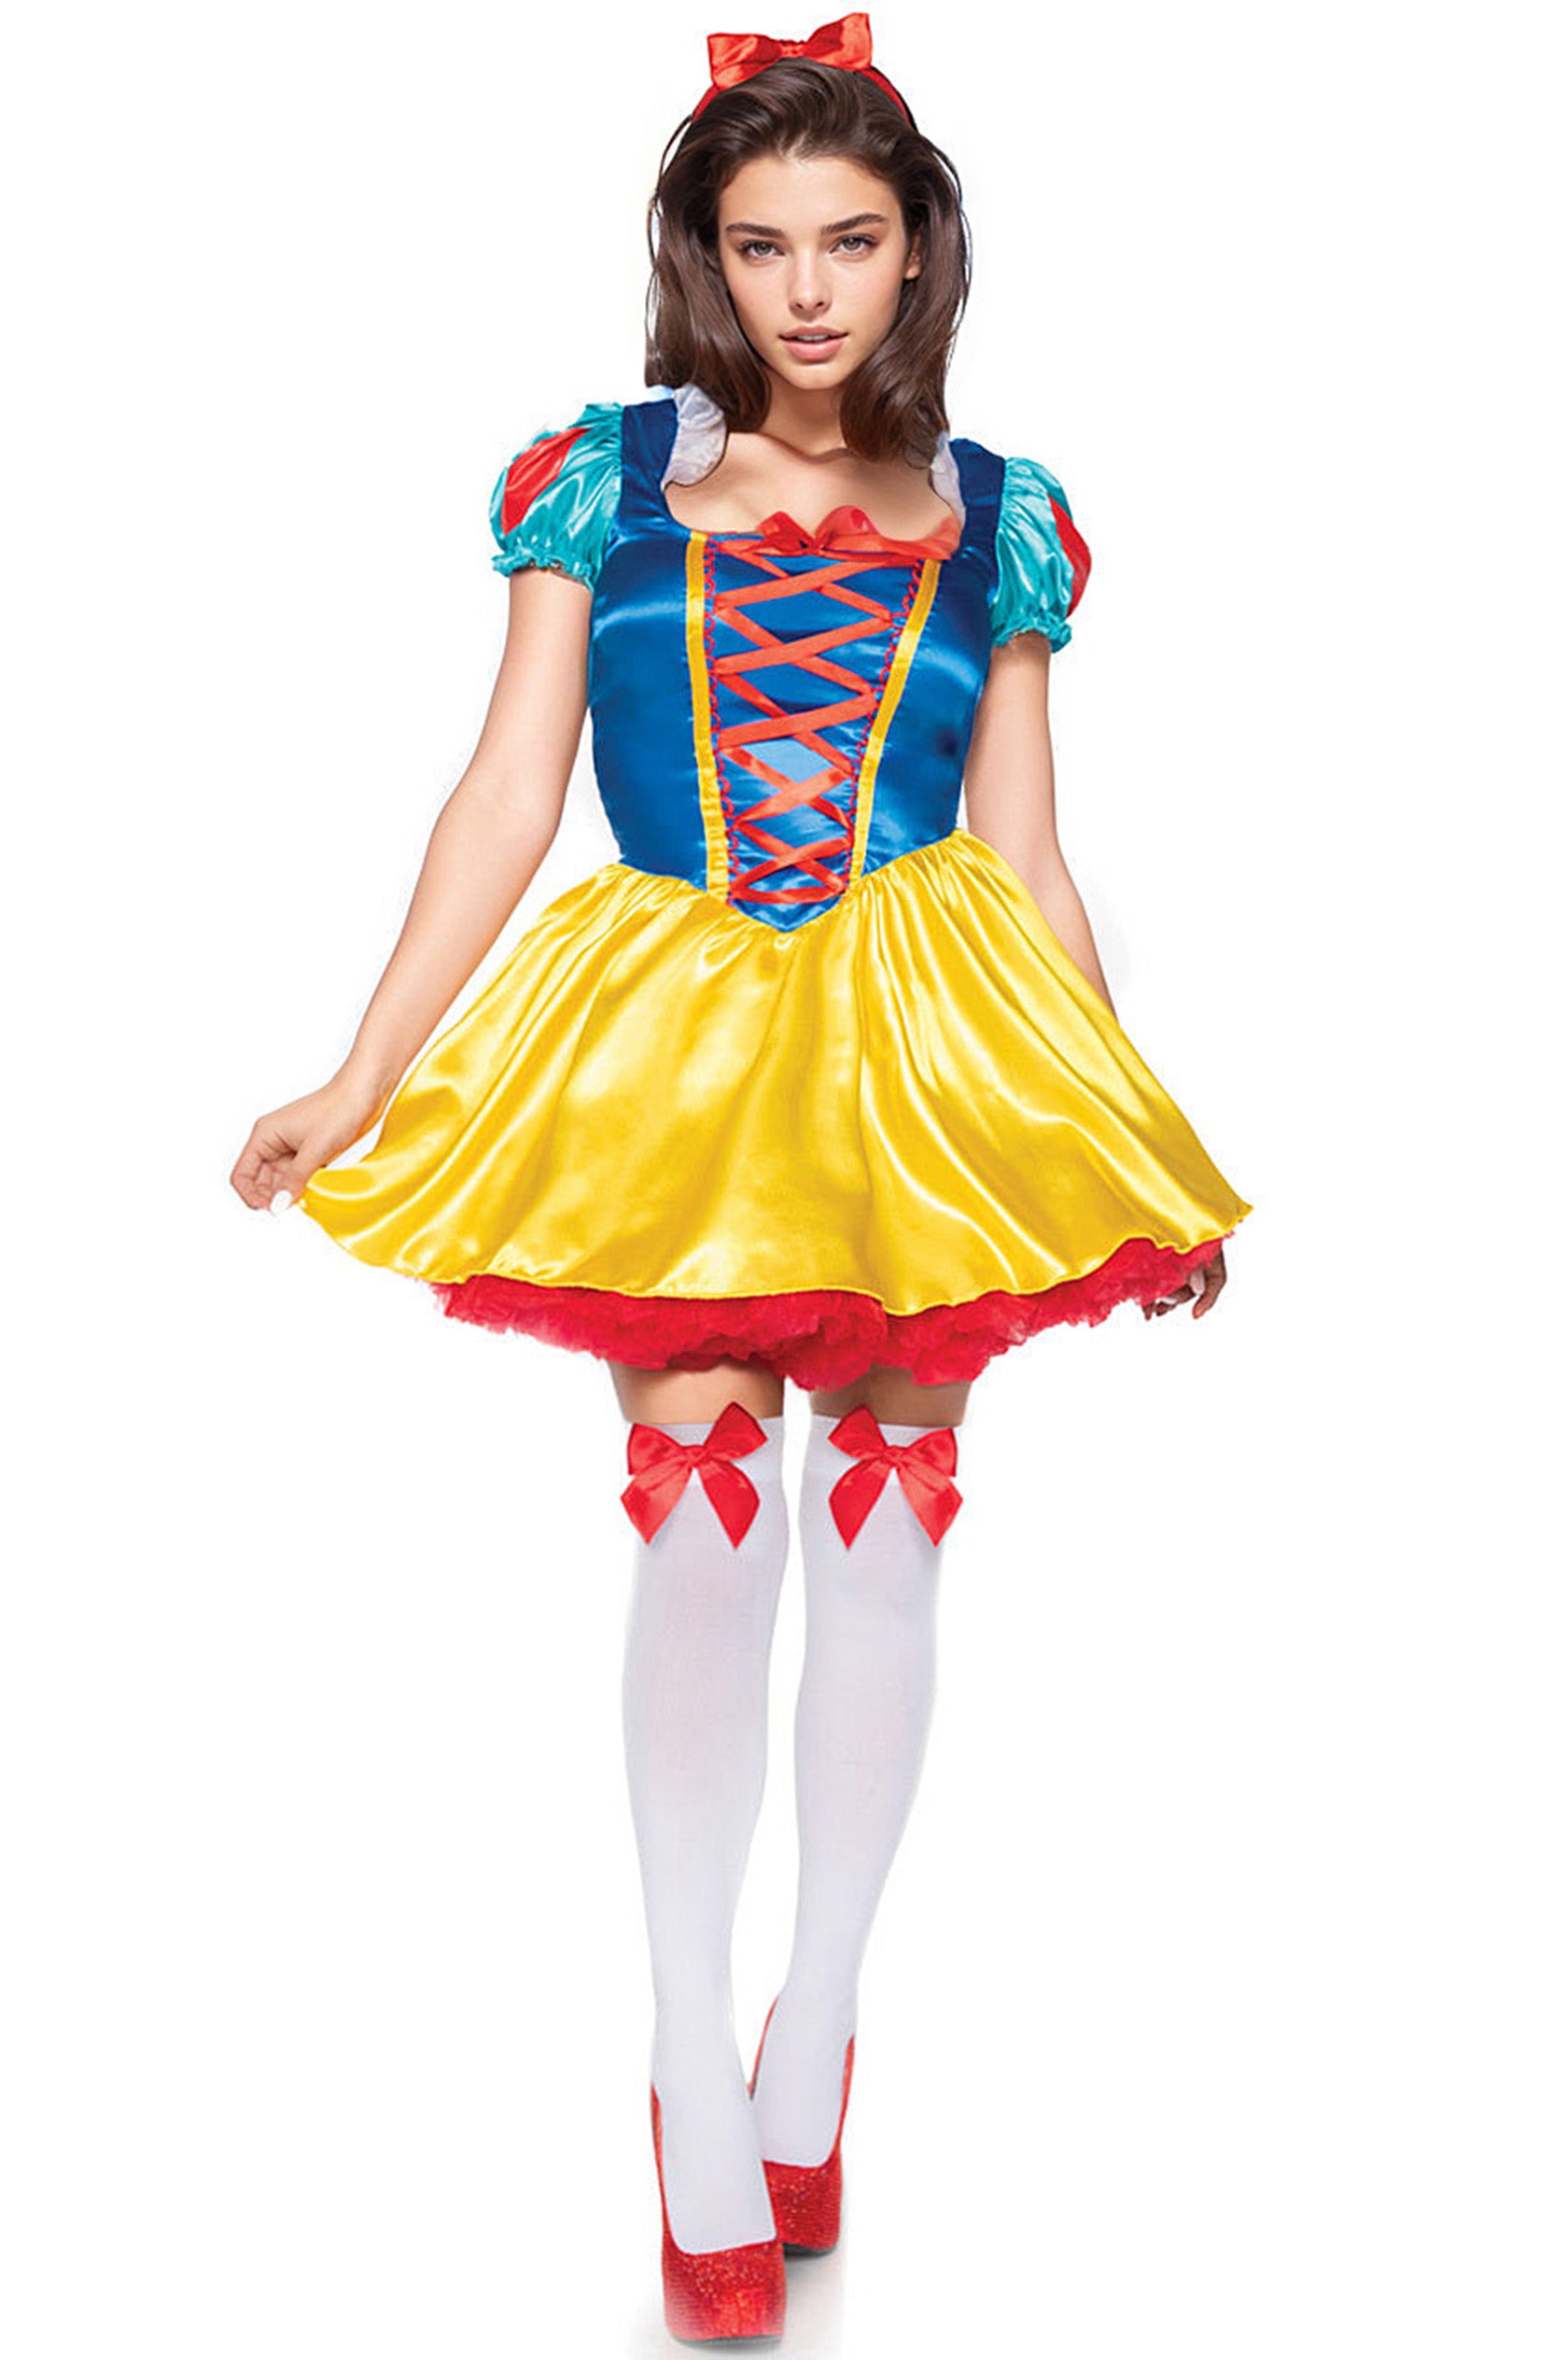 naughty disney princess costume